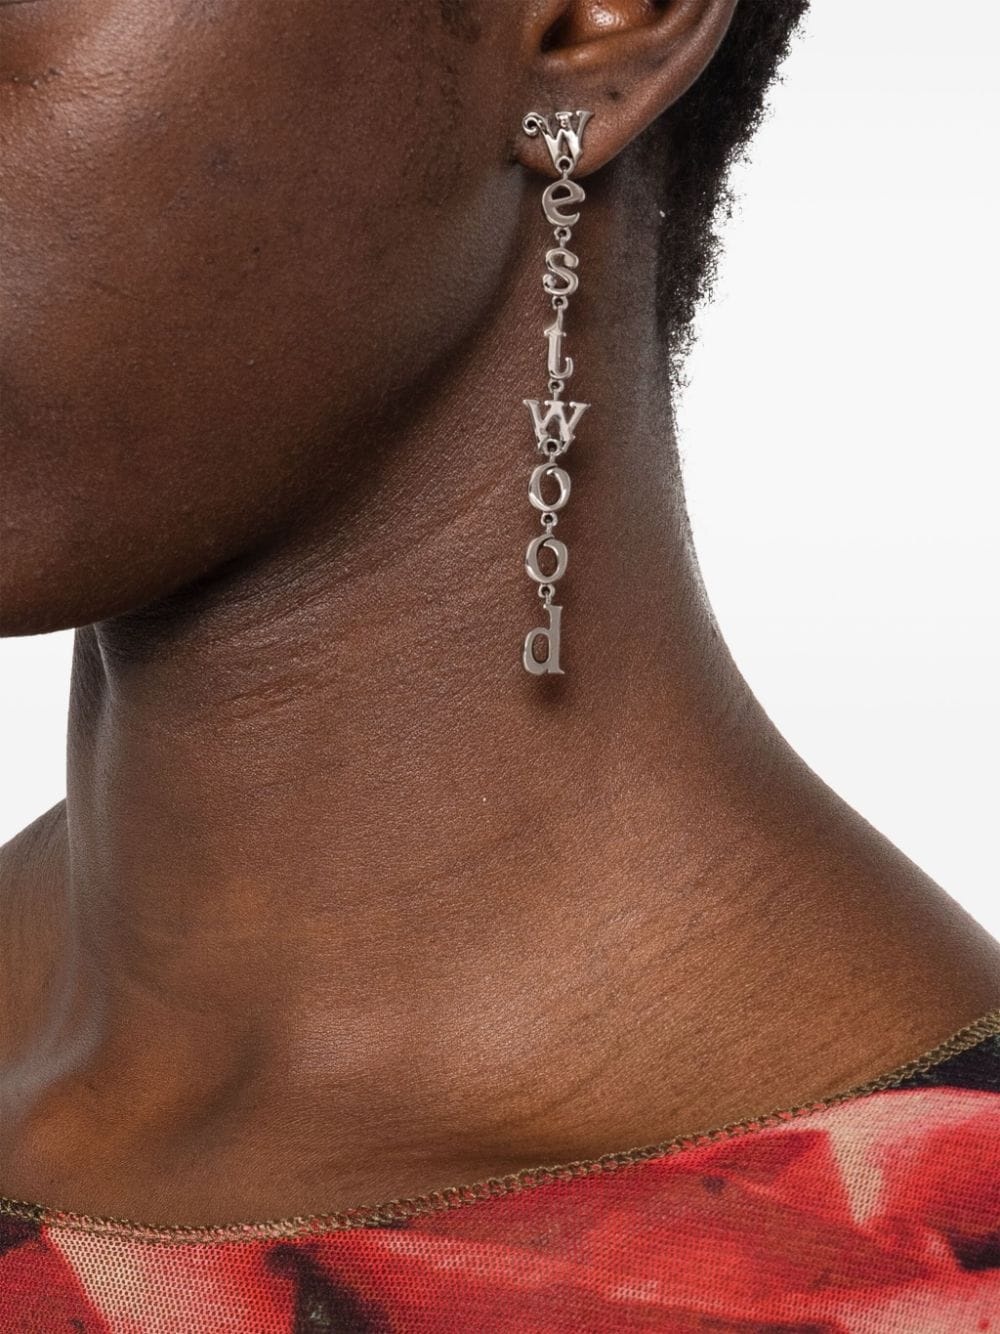 logo-lettering drop earrings - 2